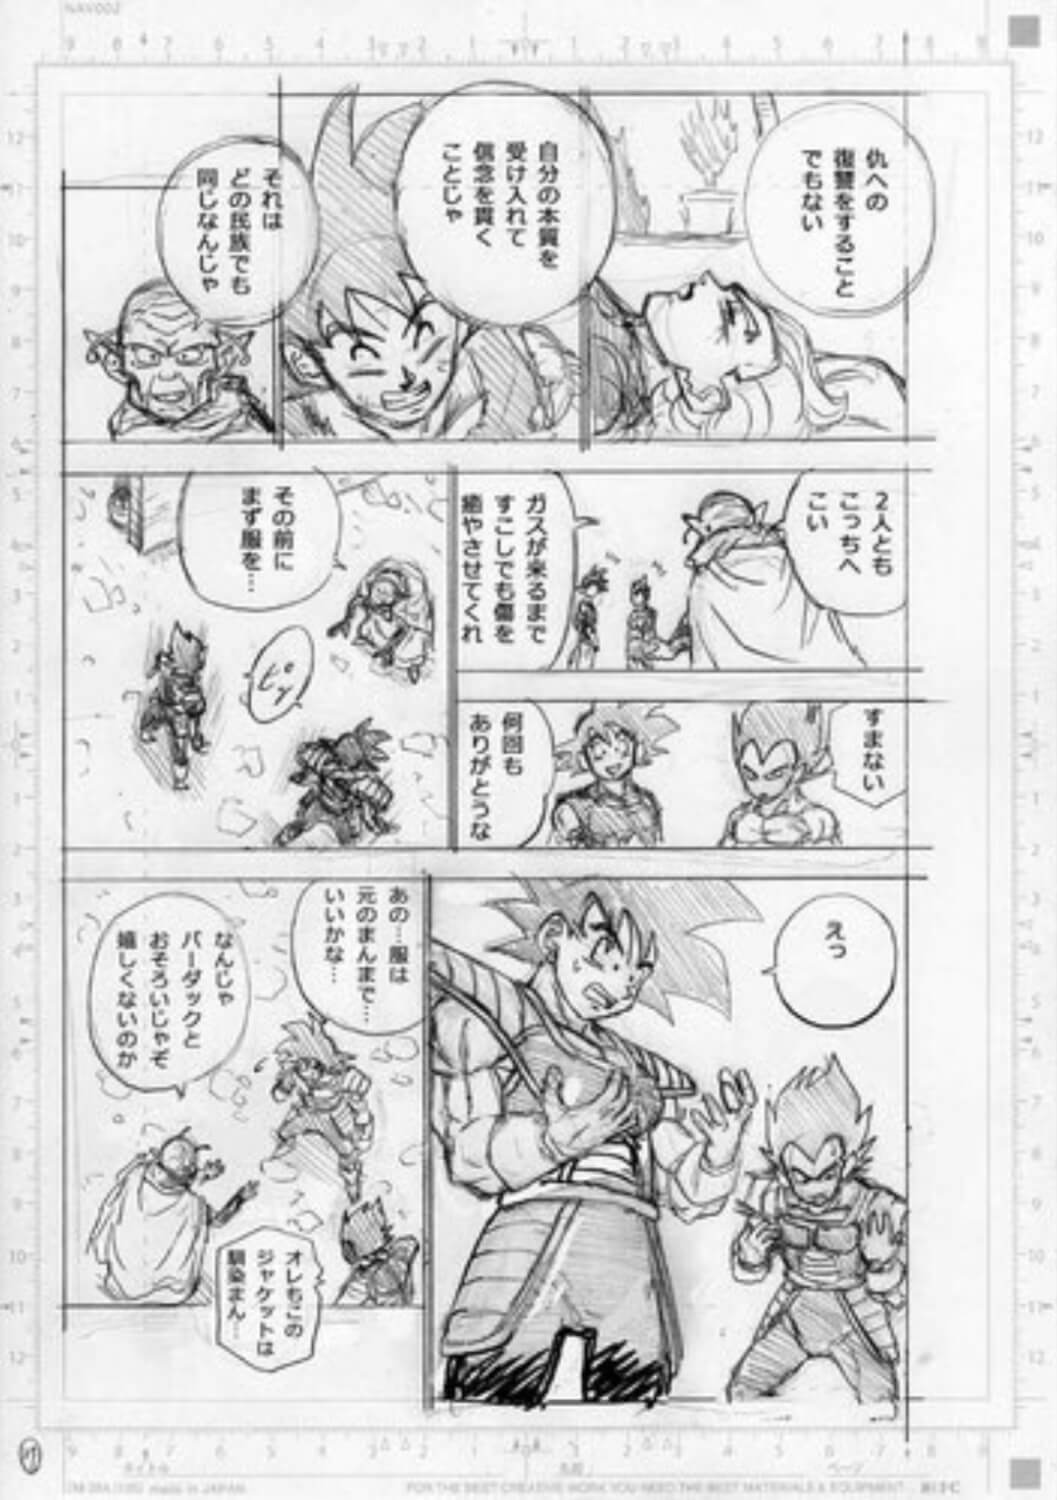 Son Goku und Vegeta in altbekannten Saiyajin-Kampfanzügen